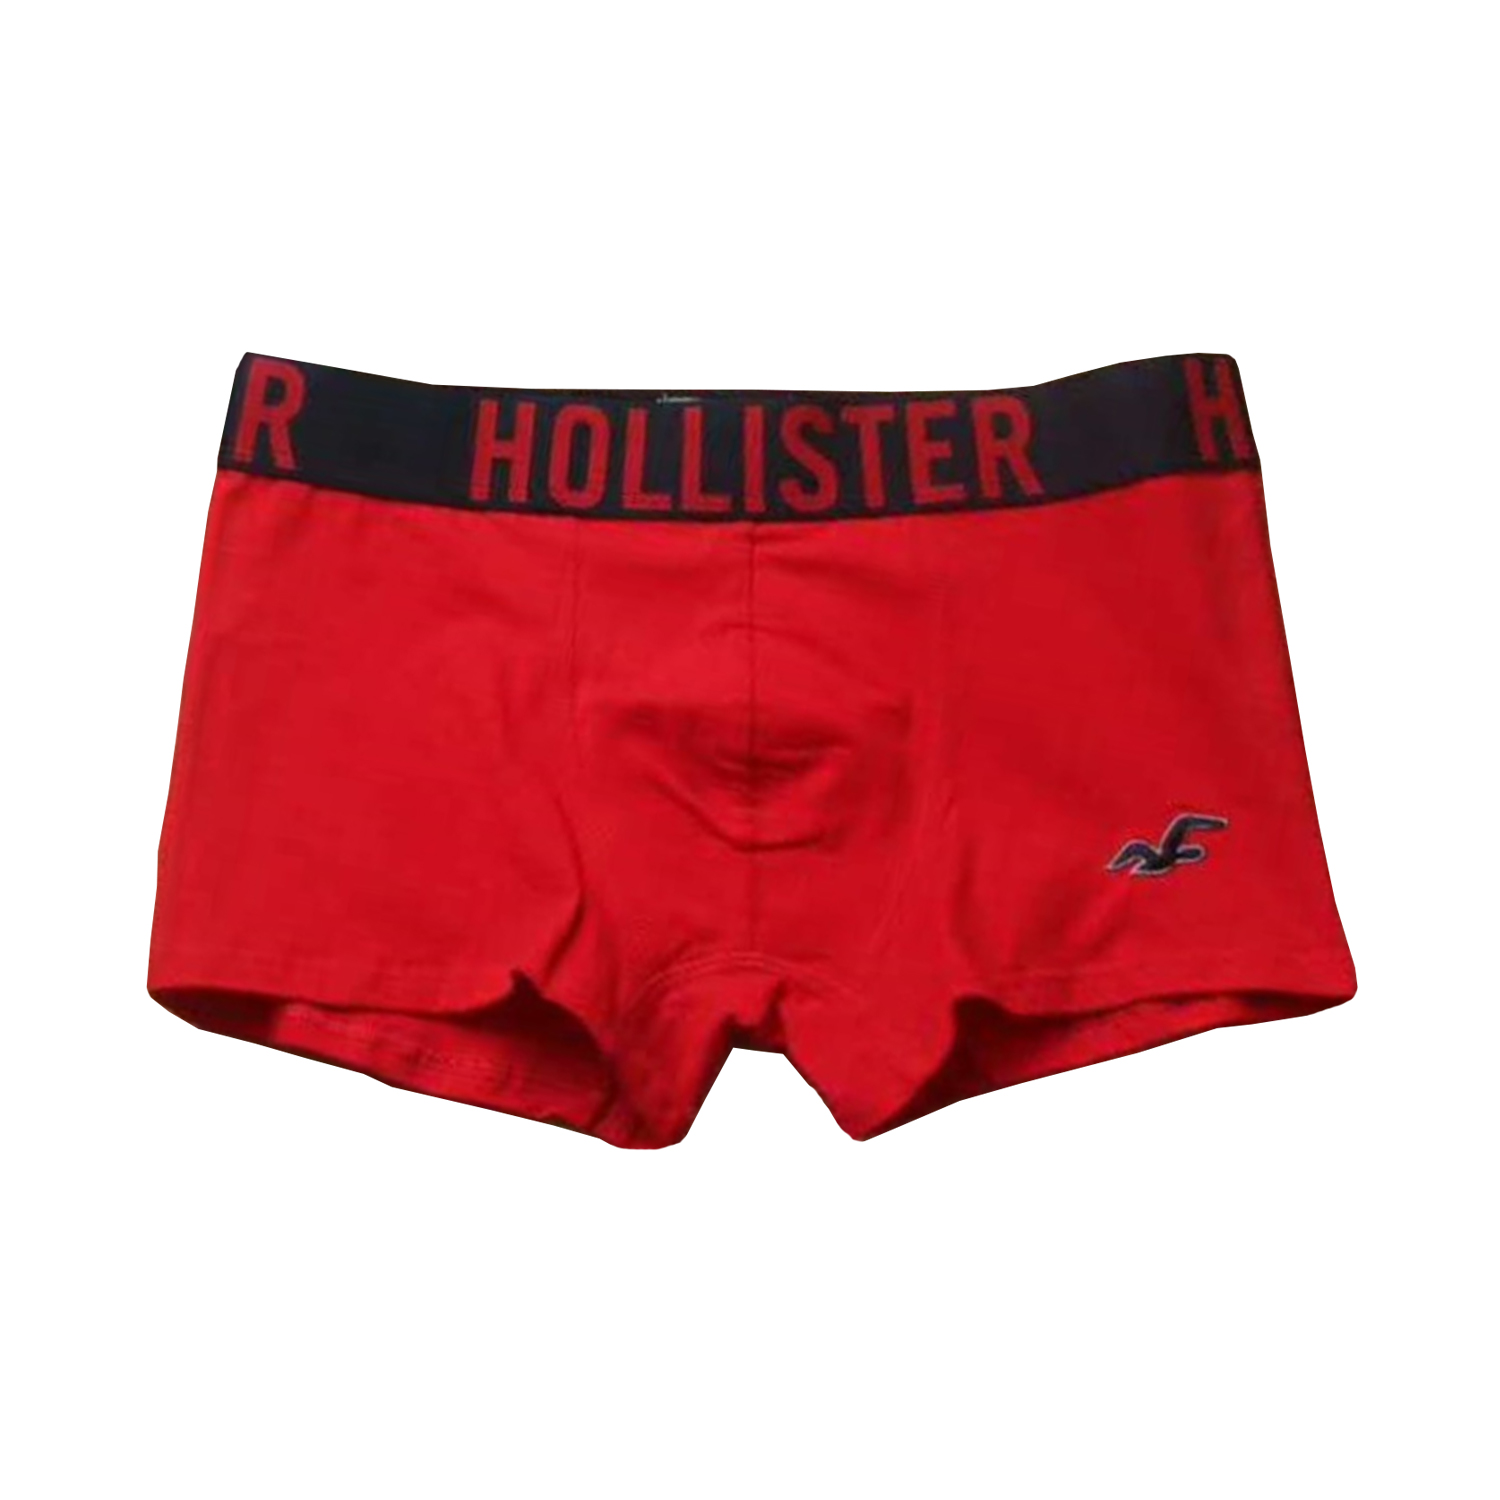 hollister guys underwear